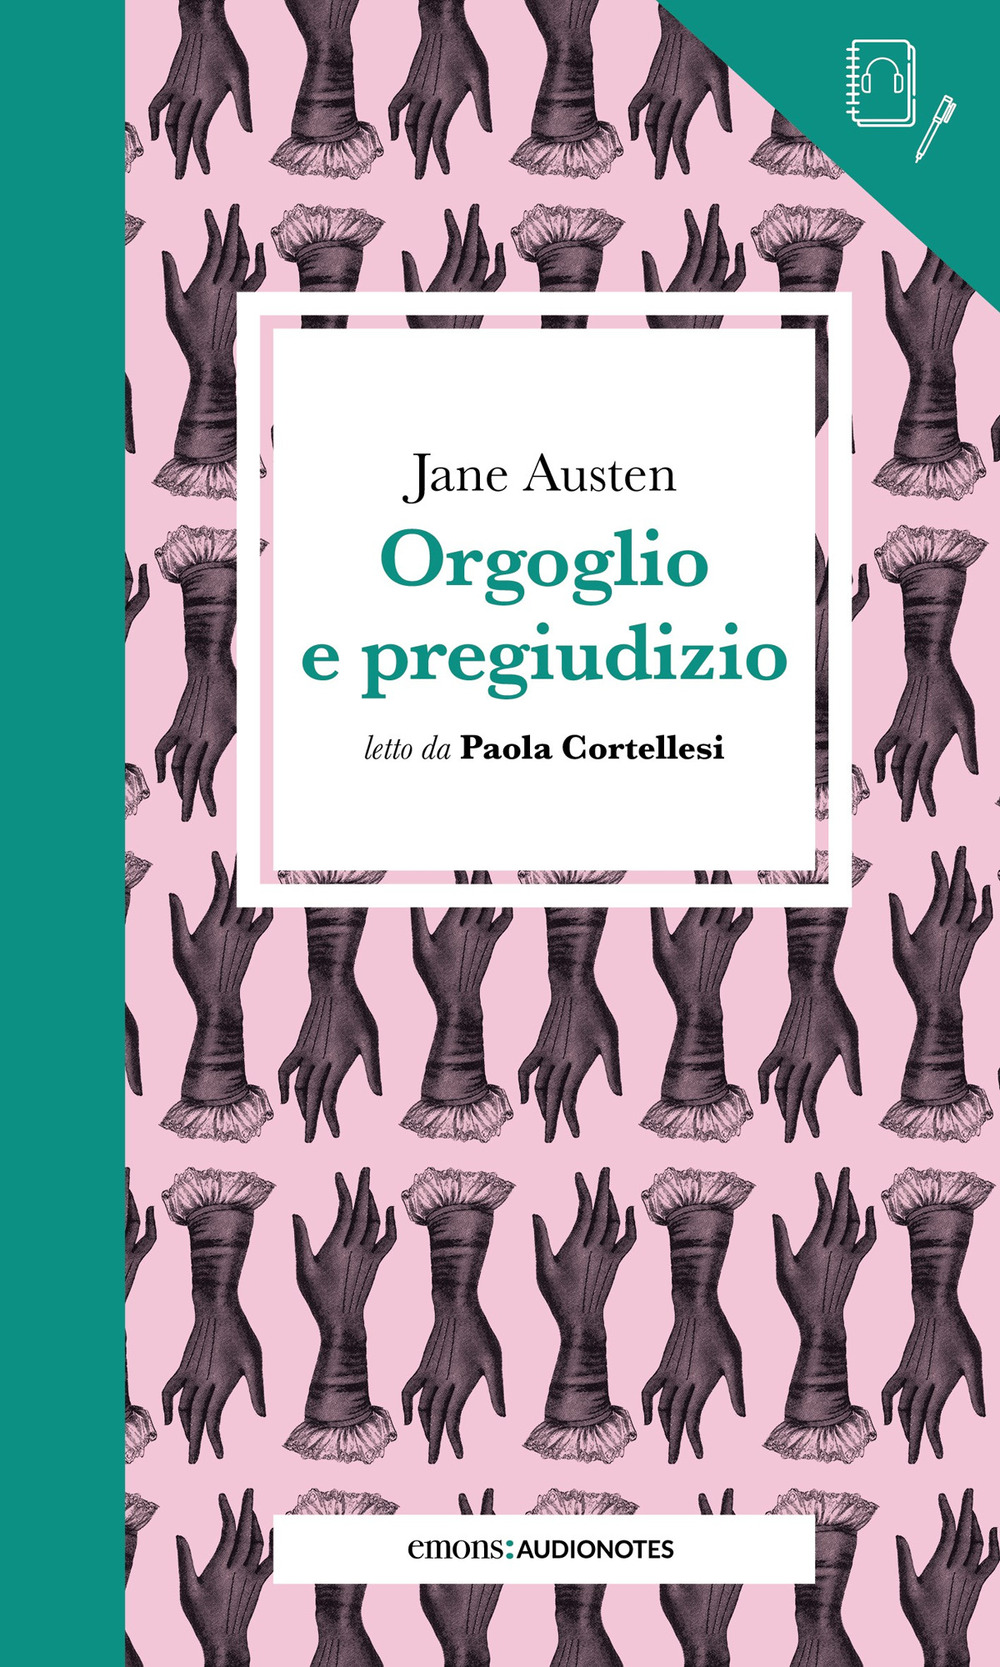 Audiolibro Jane Austen - Orgoglio E Pregiudizio Letto Da Paola Cortellesi. Con Audiolibro NUOVO SIGILLATO, EDIZIONE DEL 14/10/2021 SUBITO DISPONIBILE